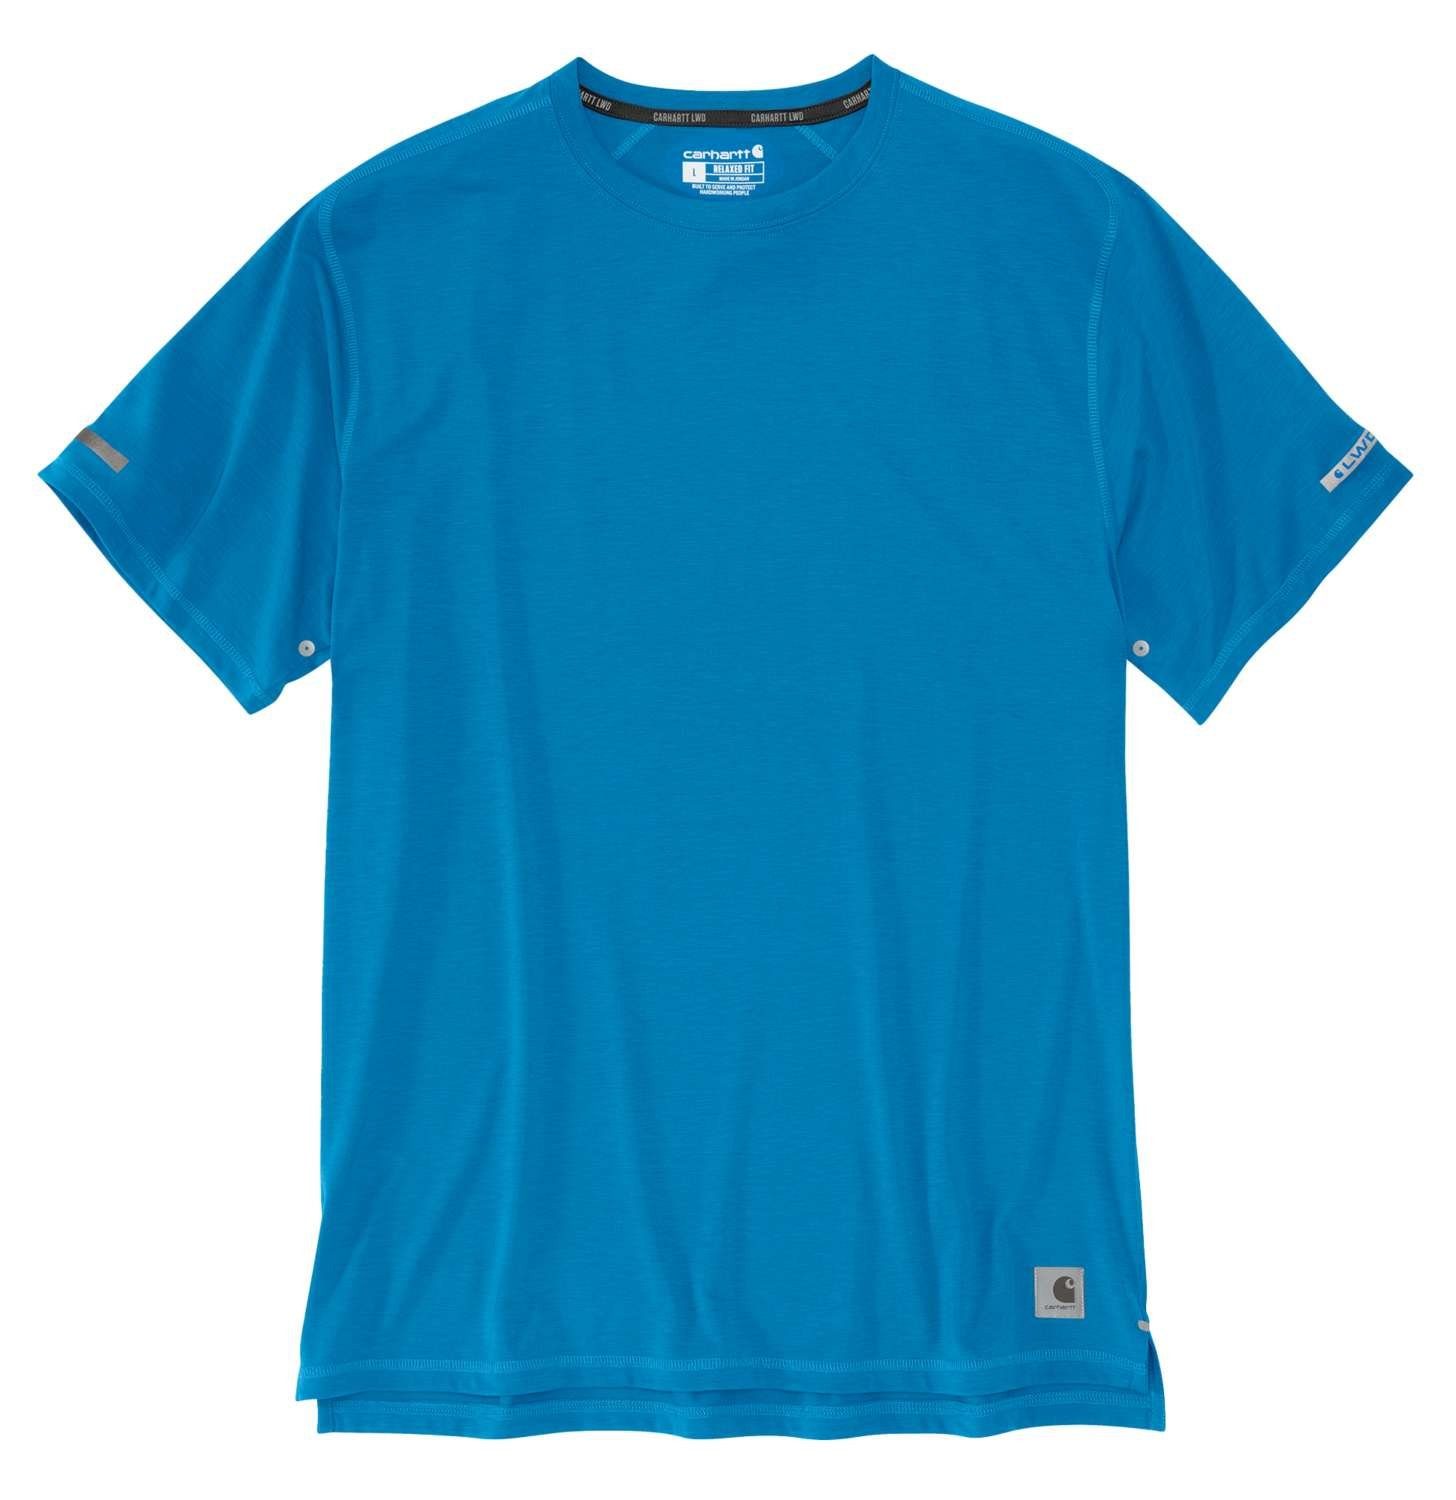 Herren Carhartt T-Shirt blue Fit Carhartt marine Extremes T-Shirt Relaxed Adult